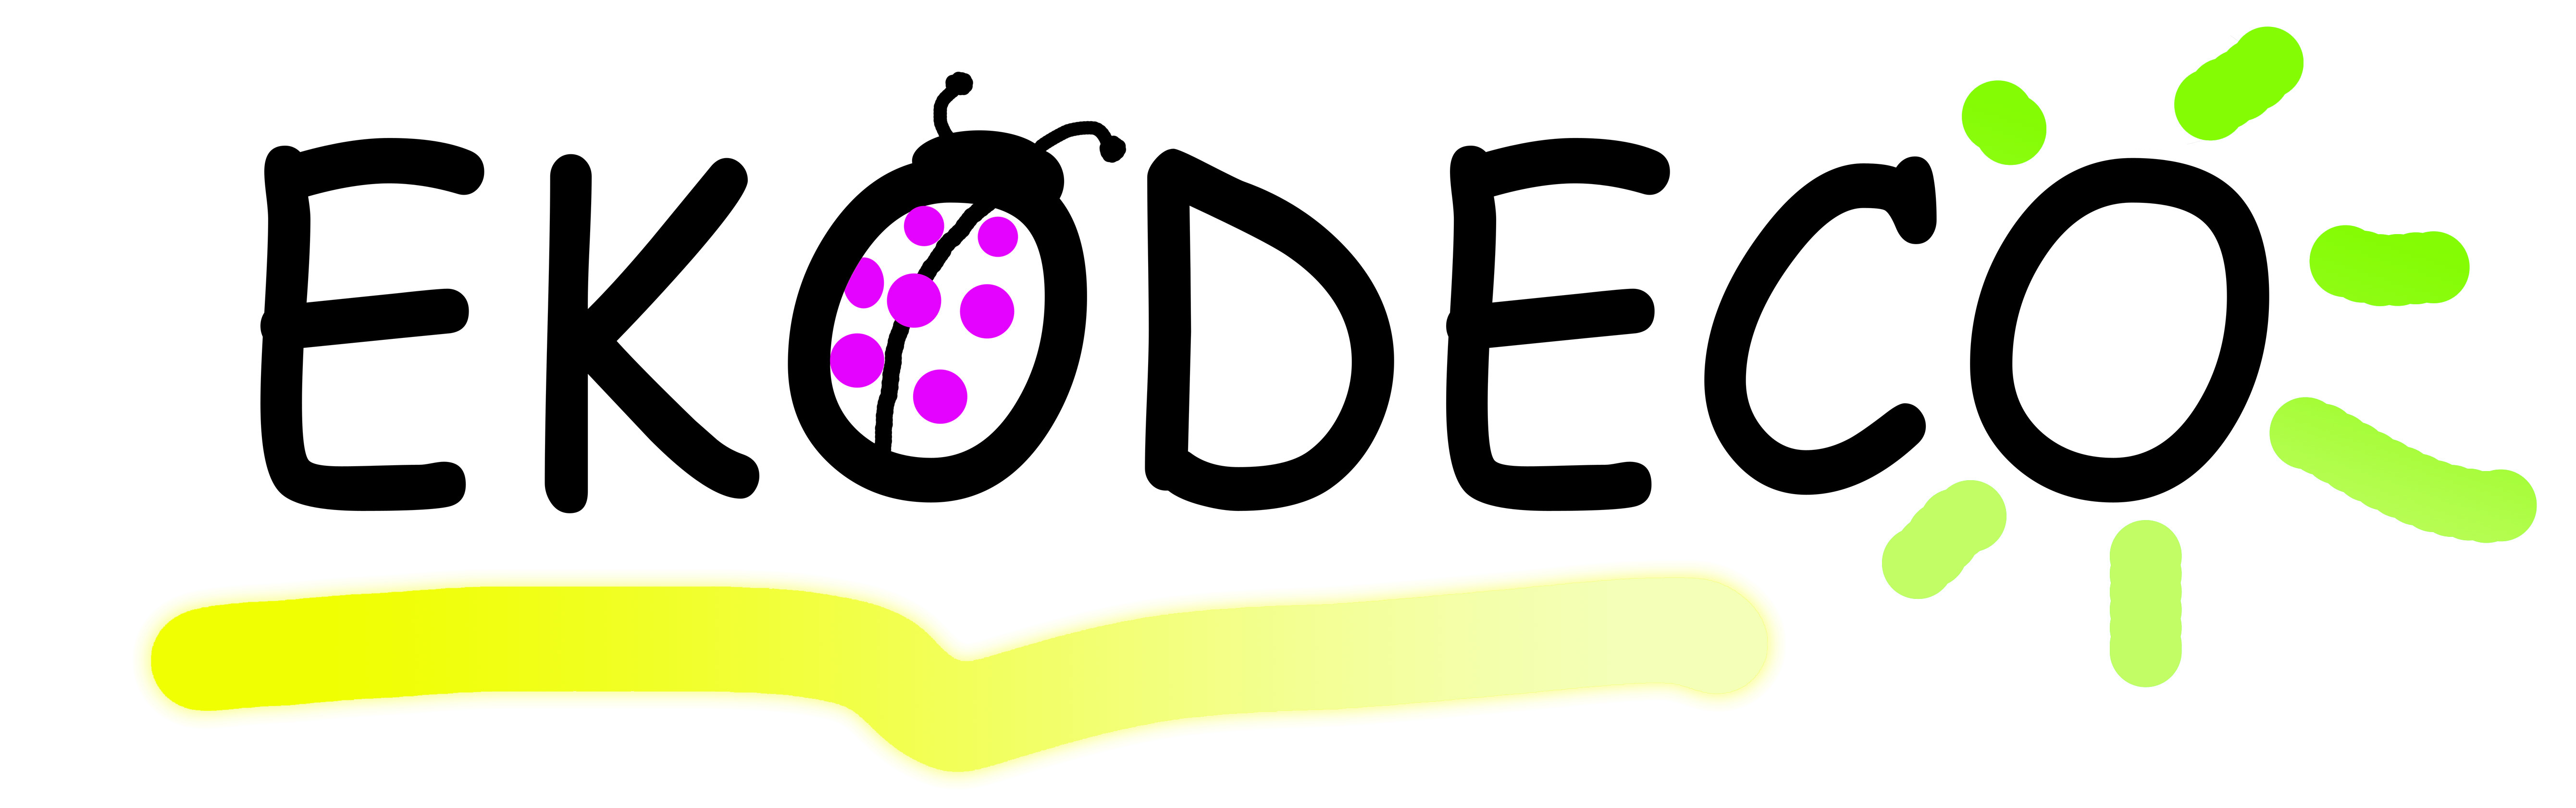 logotipo Ekodeco